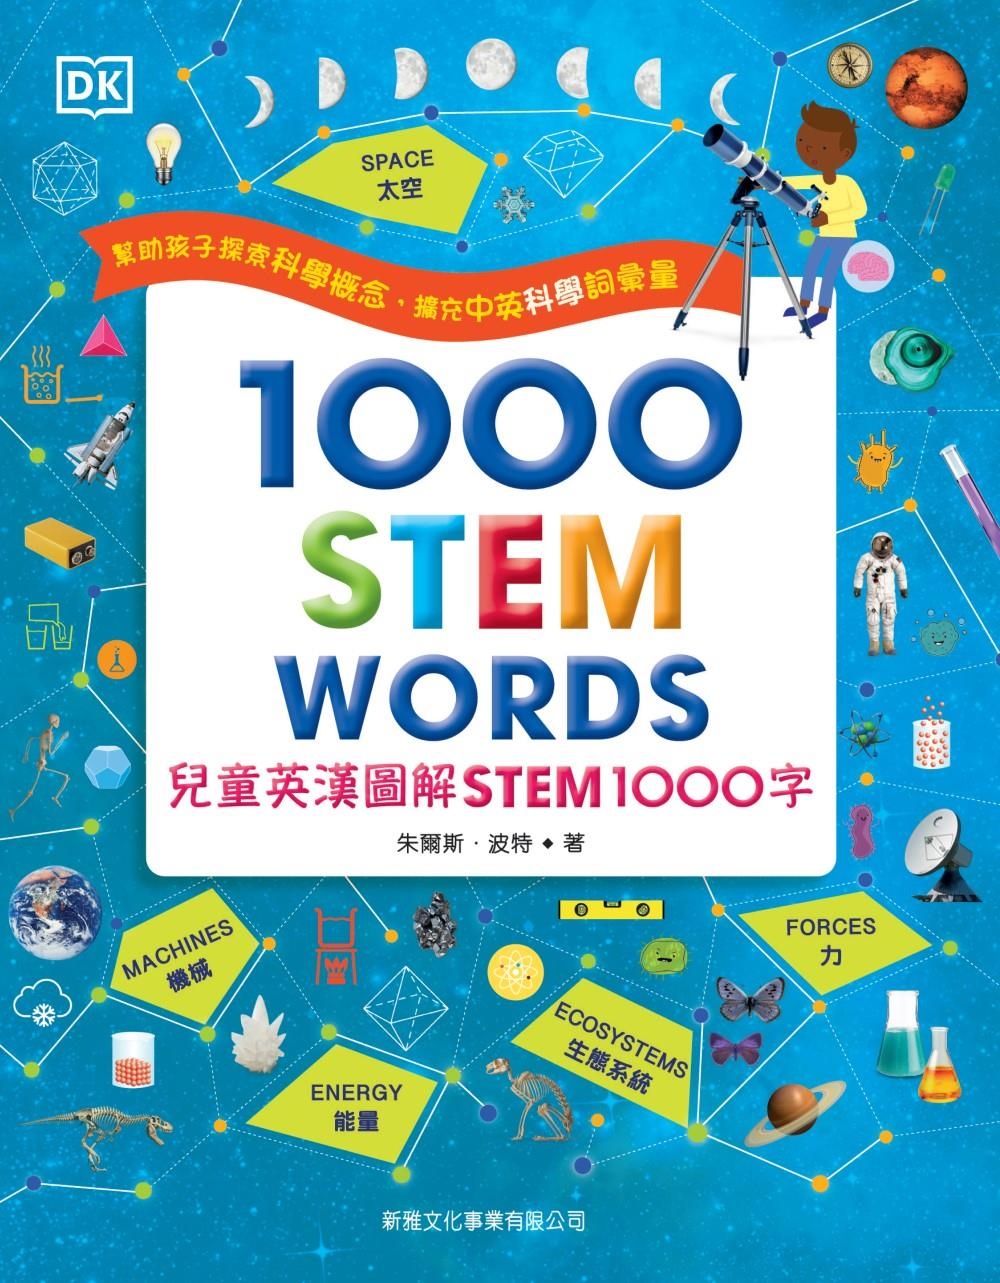 兒童英漢圖解STEM 1000字(1000 STEM WORDs)